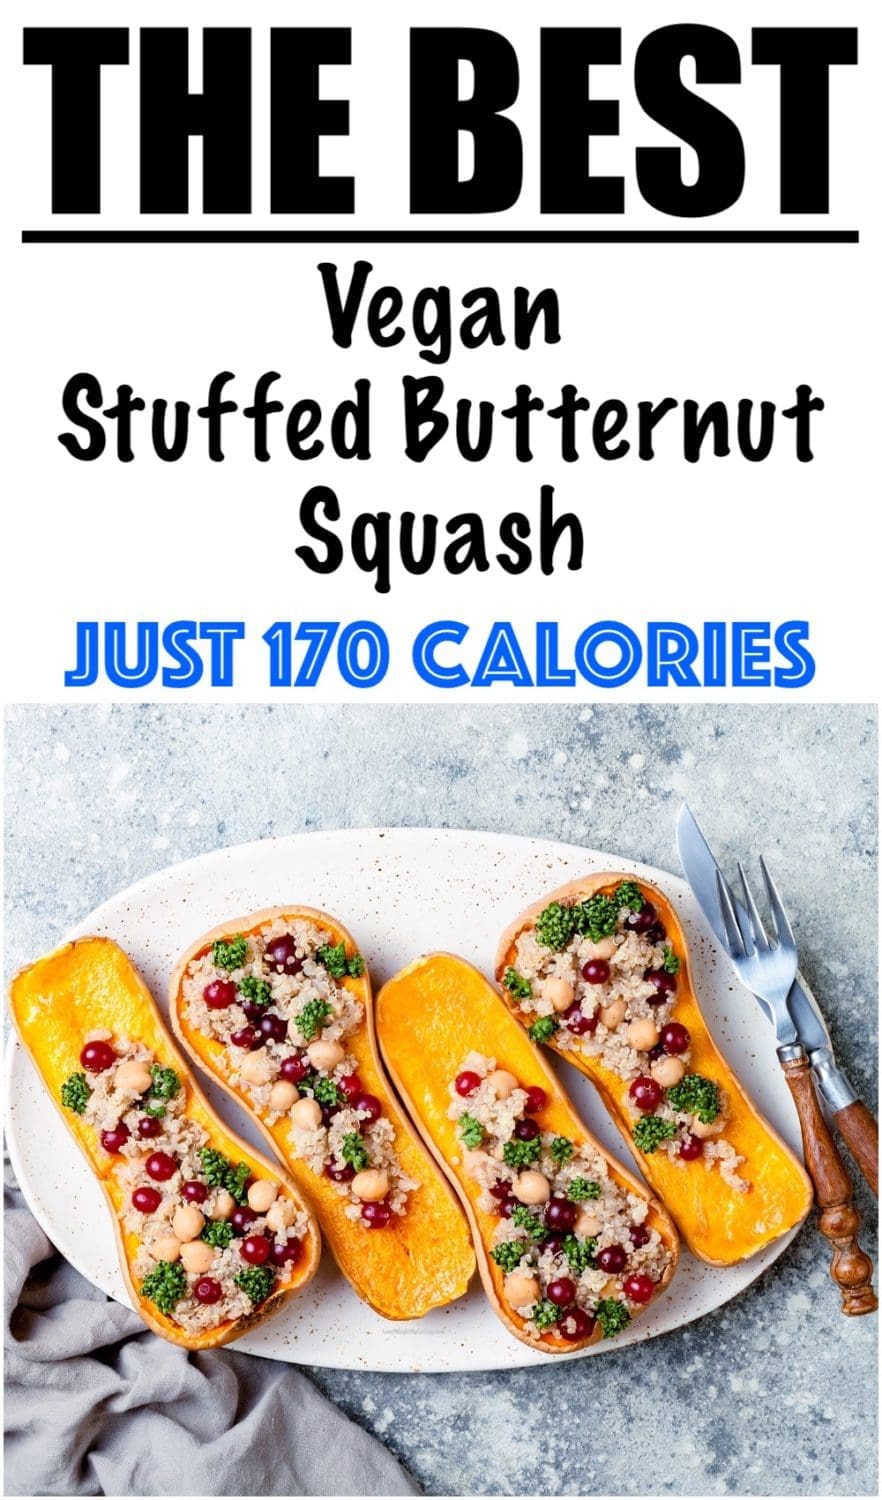 Vegan Stuffed Butternut Squash Recipe